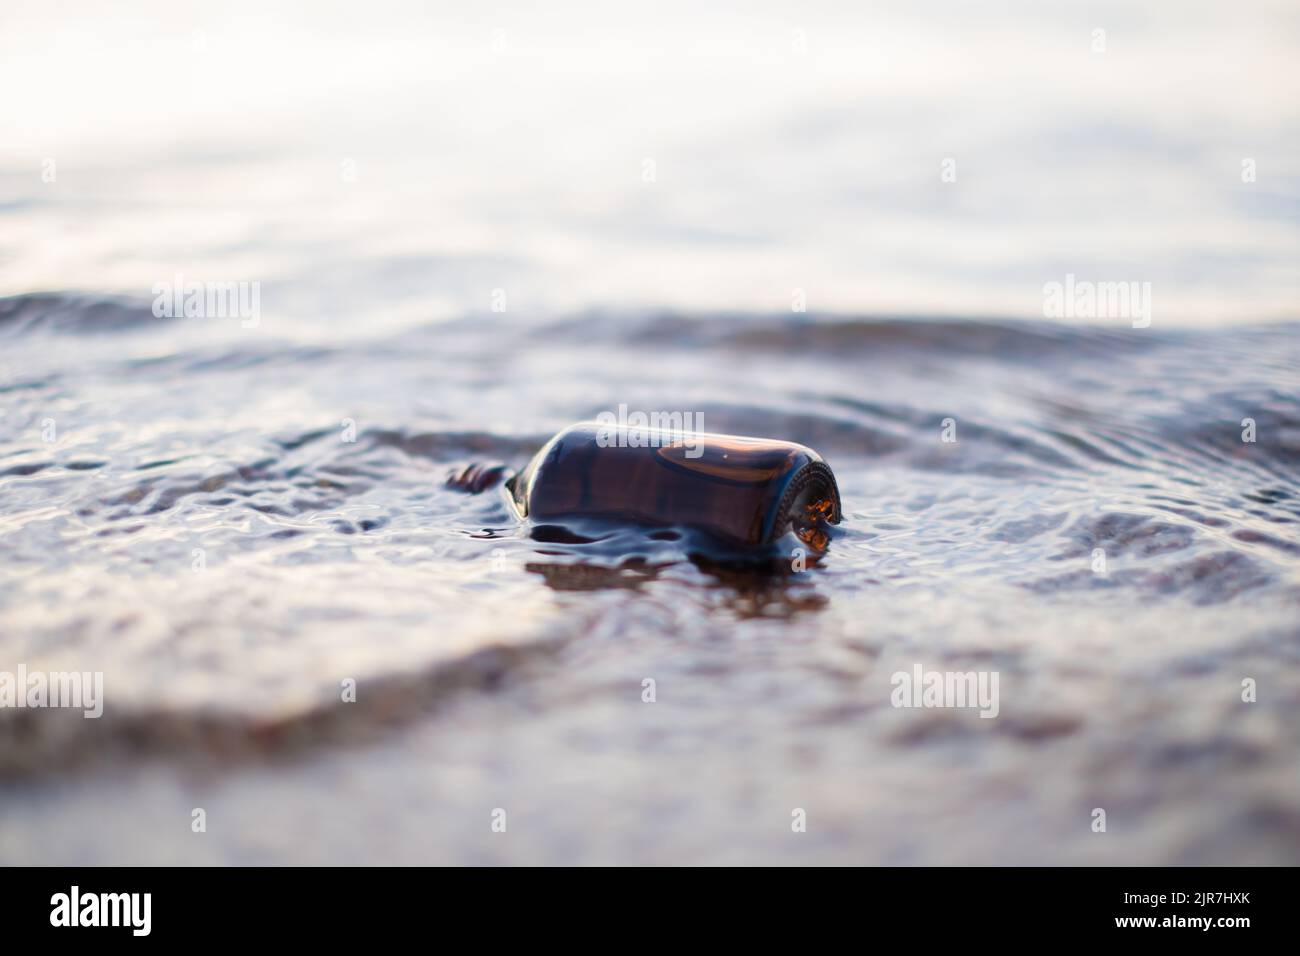 Flasche ätherisches Öl am Strand in Wellen. Kleine braune Medizinflasche im Hintergrund der Natur. Hanföl aus biologischem CBD. Stockfoto